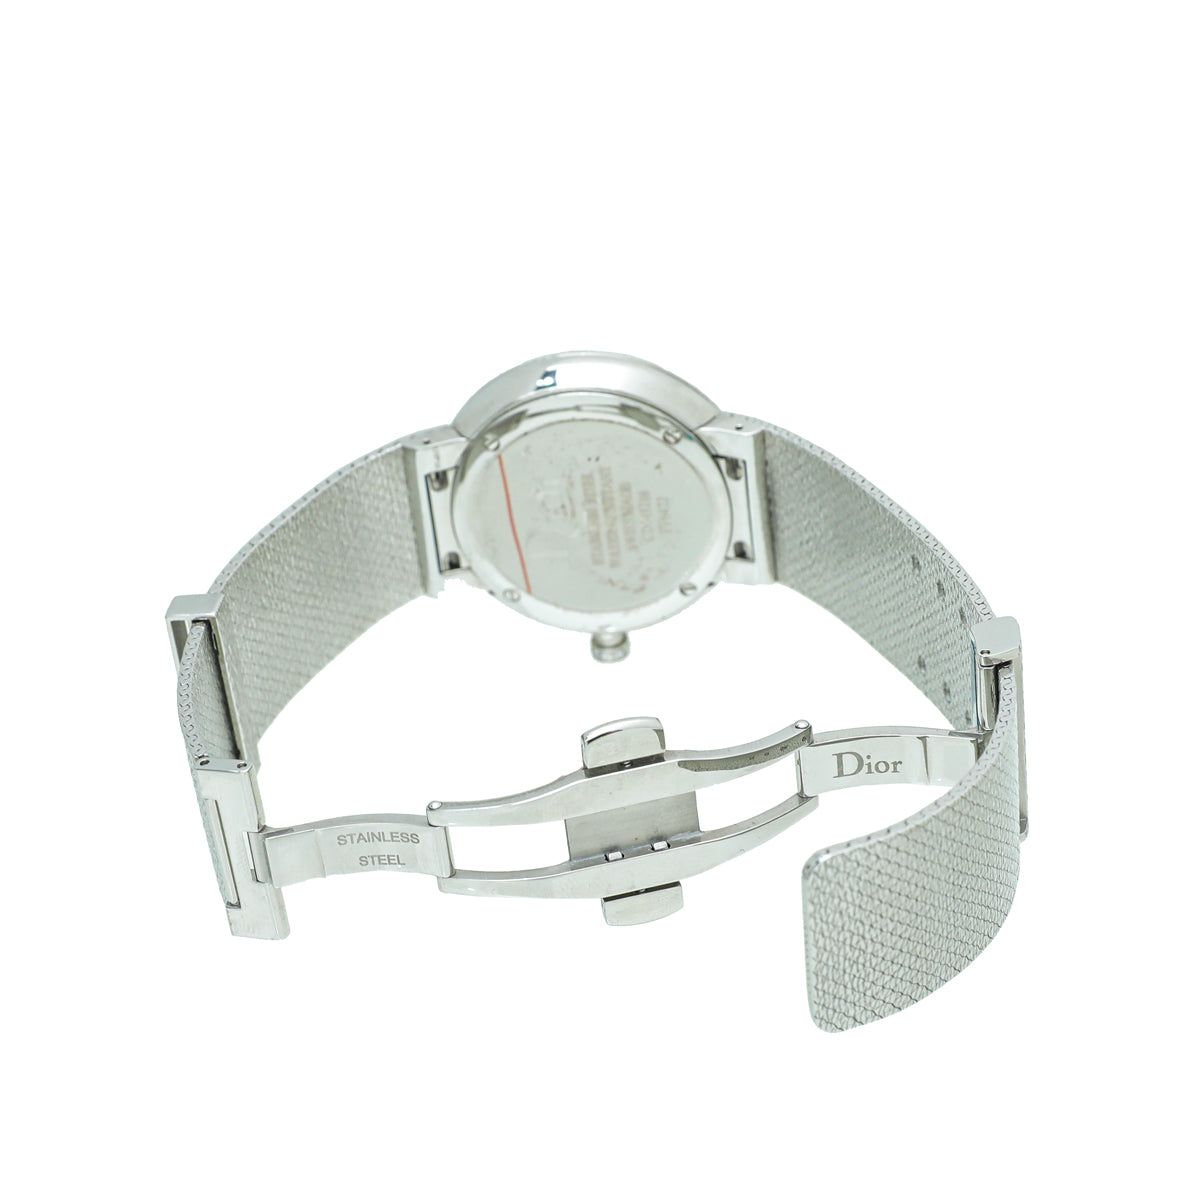 Christian Dior ST.ST MOP Diamond La D de Dior Satine 36mm Quartz Watch